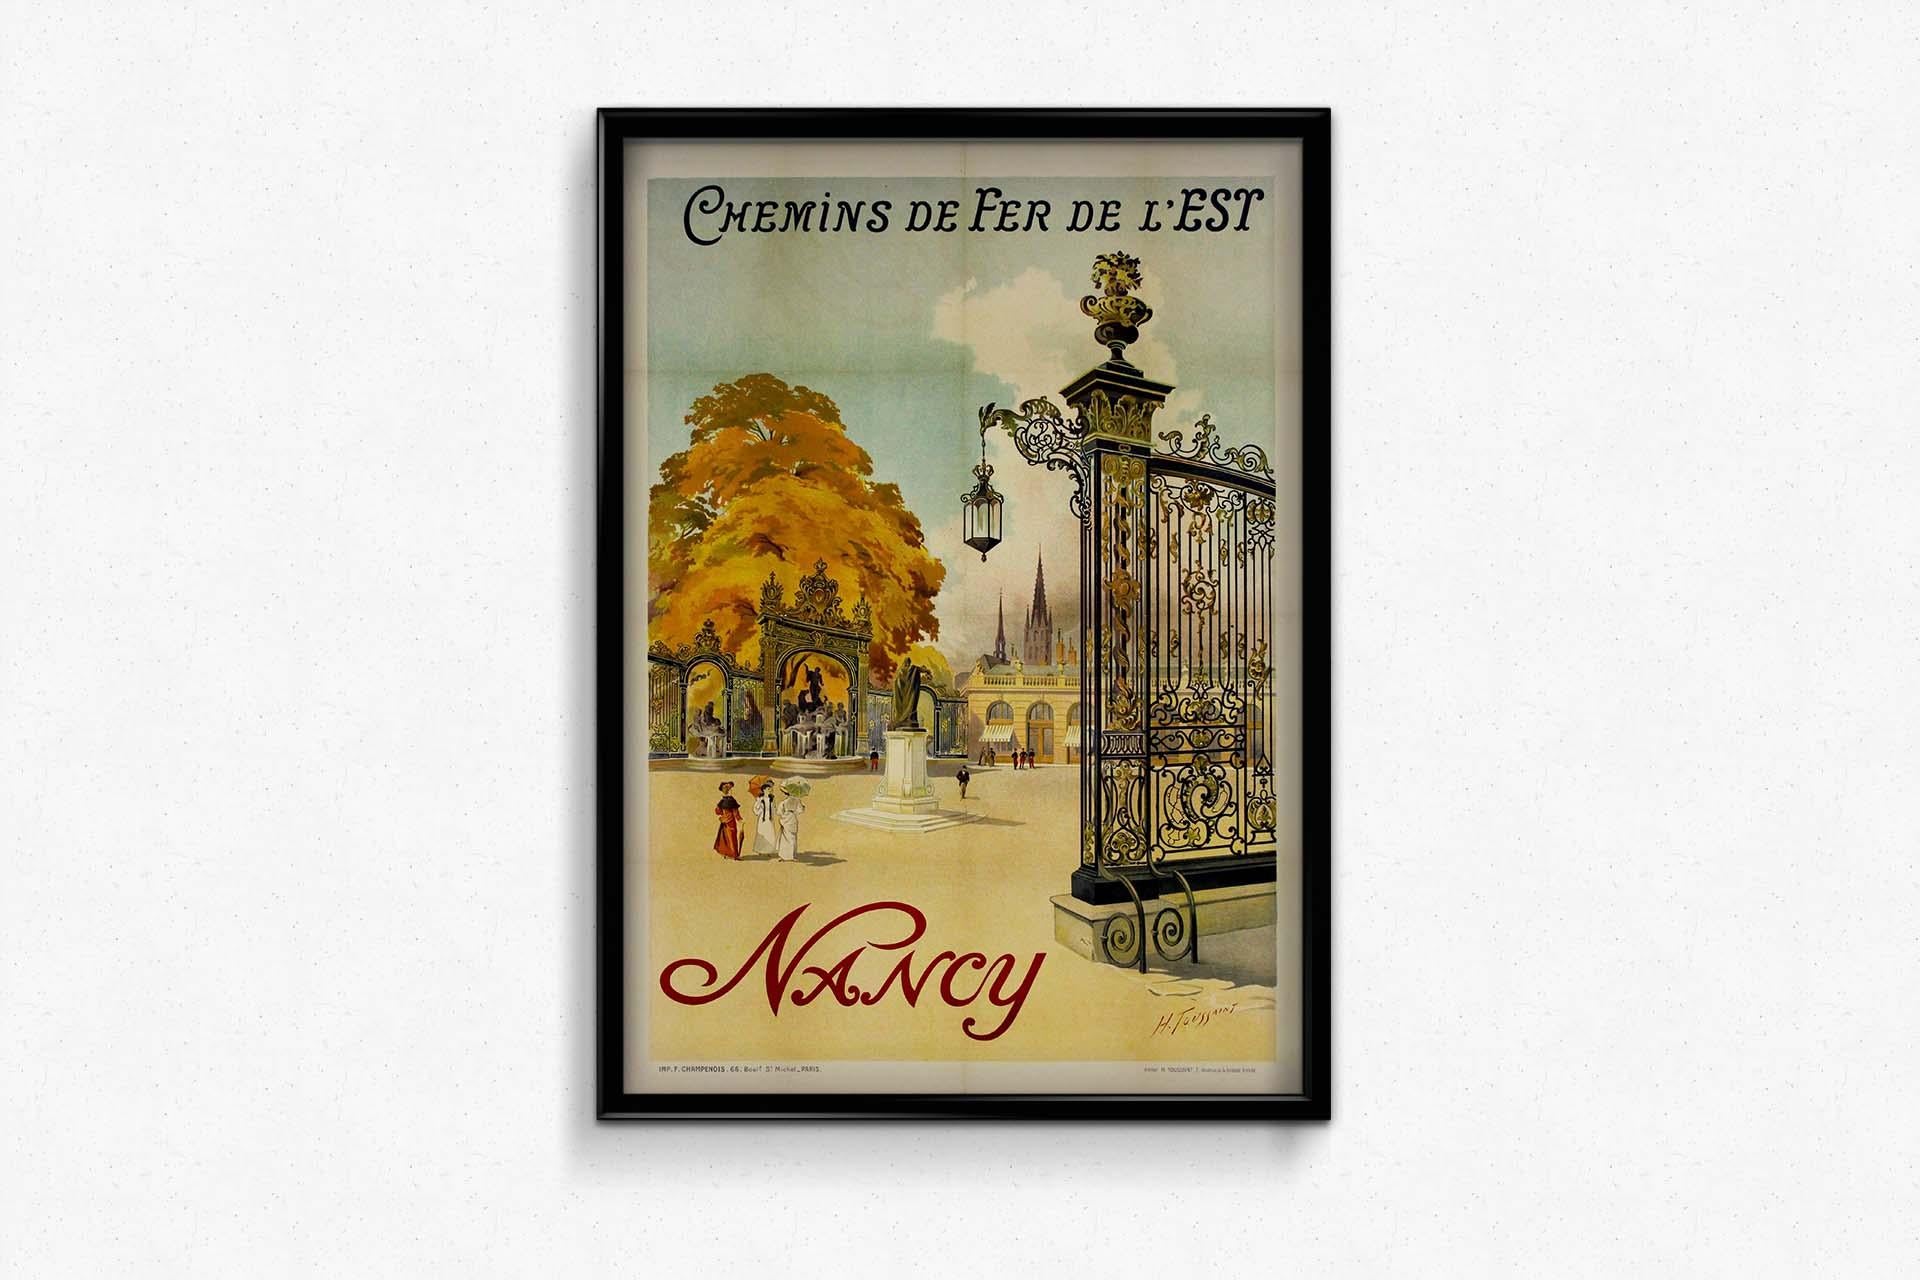 Dans le domaine de l'affiche de la Belle Époque, la création d'Henri Toussaint en 1907 pour les Chemins de fer de l'Or s'impose comme un chef-d'œuvre, invitant les spectateurs à un voyage visuel dans l'exquise ville de Nancy. Au cœur de cette œuvre